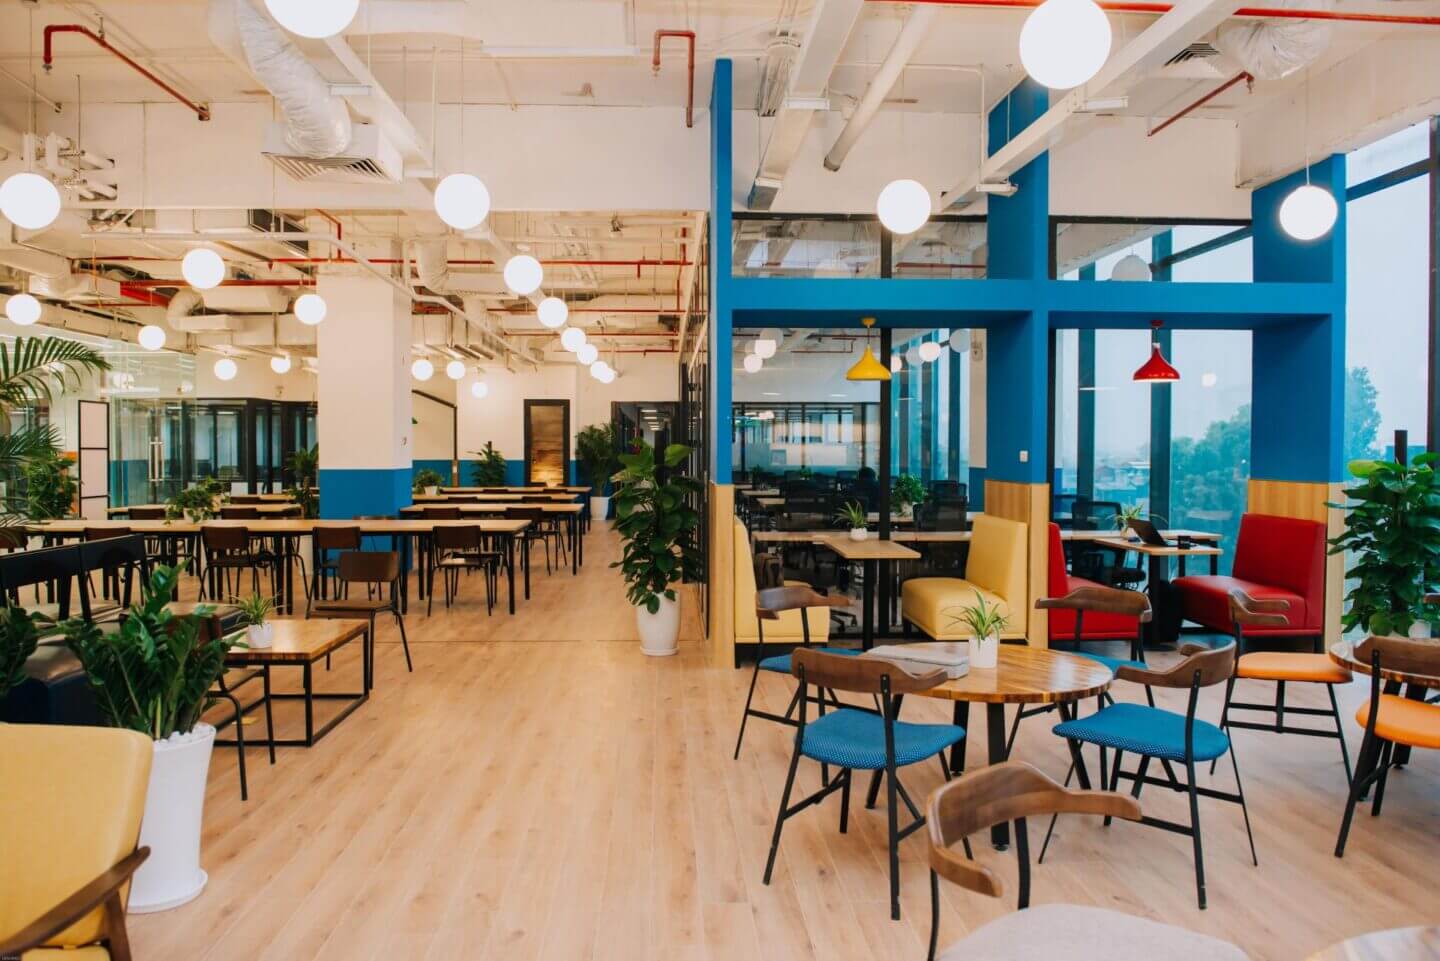 Văn phòng Coworking Space mang không gian như một quán cafe tạo cảm giác thoải mái khi làm việc